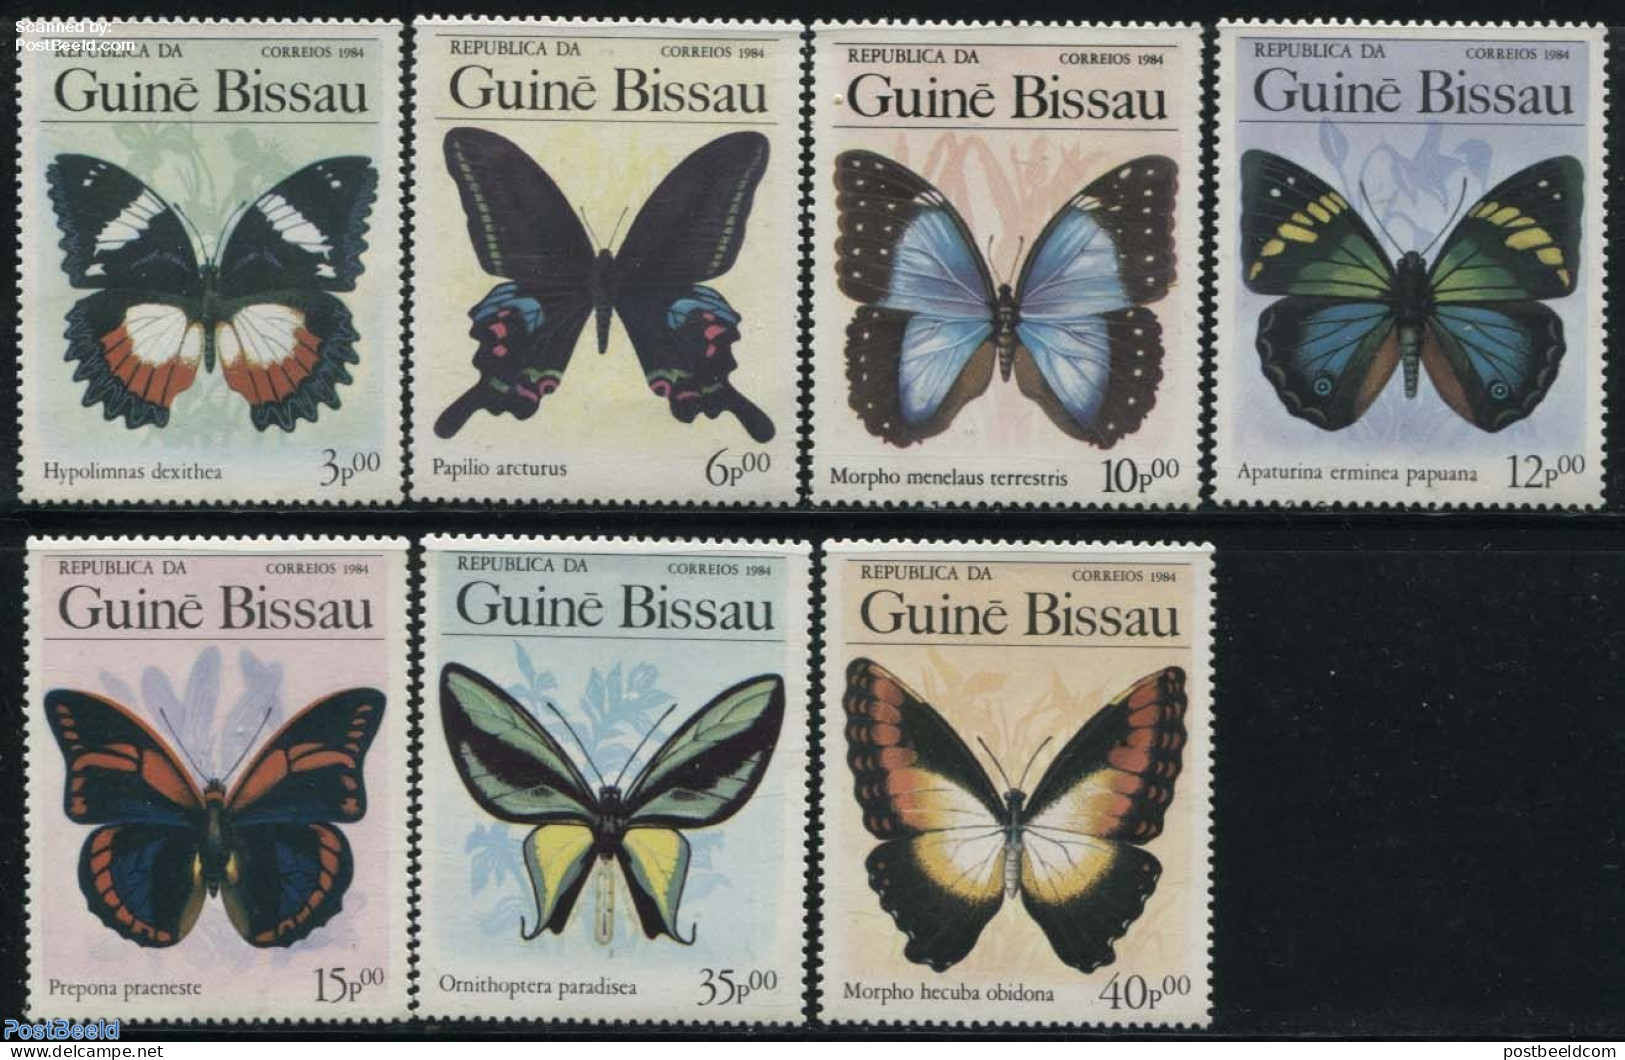 Guinea Bissau 1984 Butterflies 7v, Mint NH, Nature - Butterflies - Guinée-Bissau